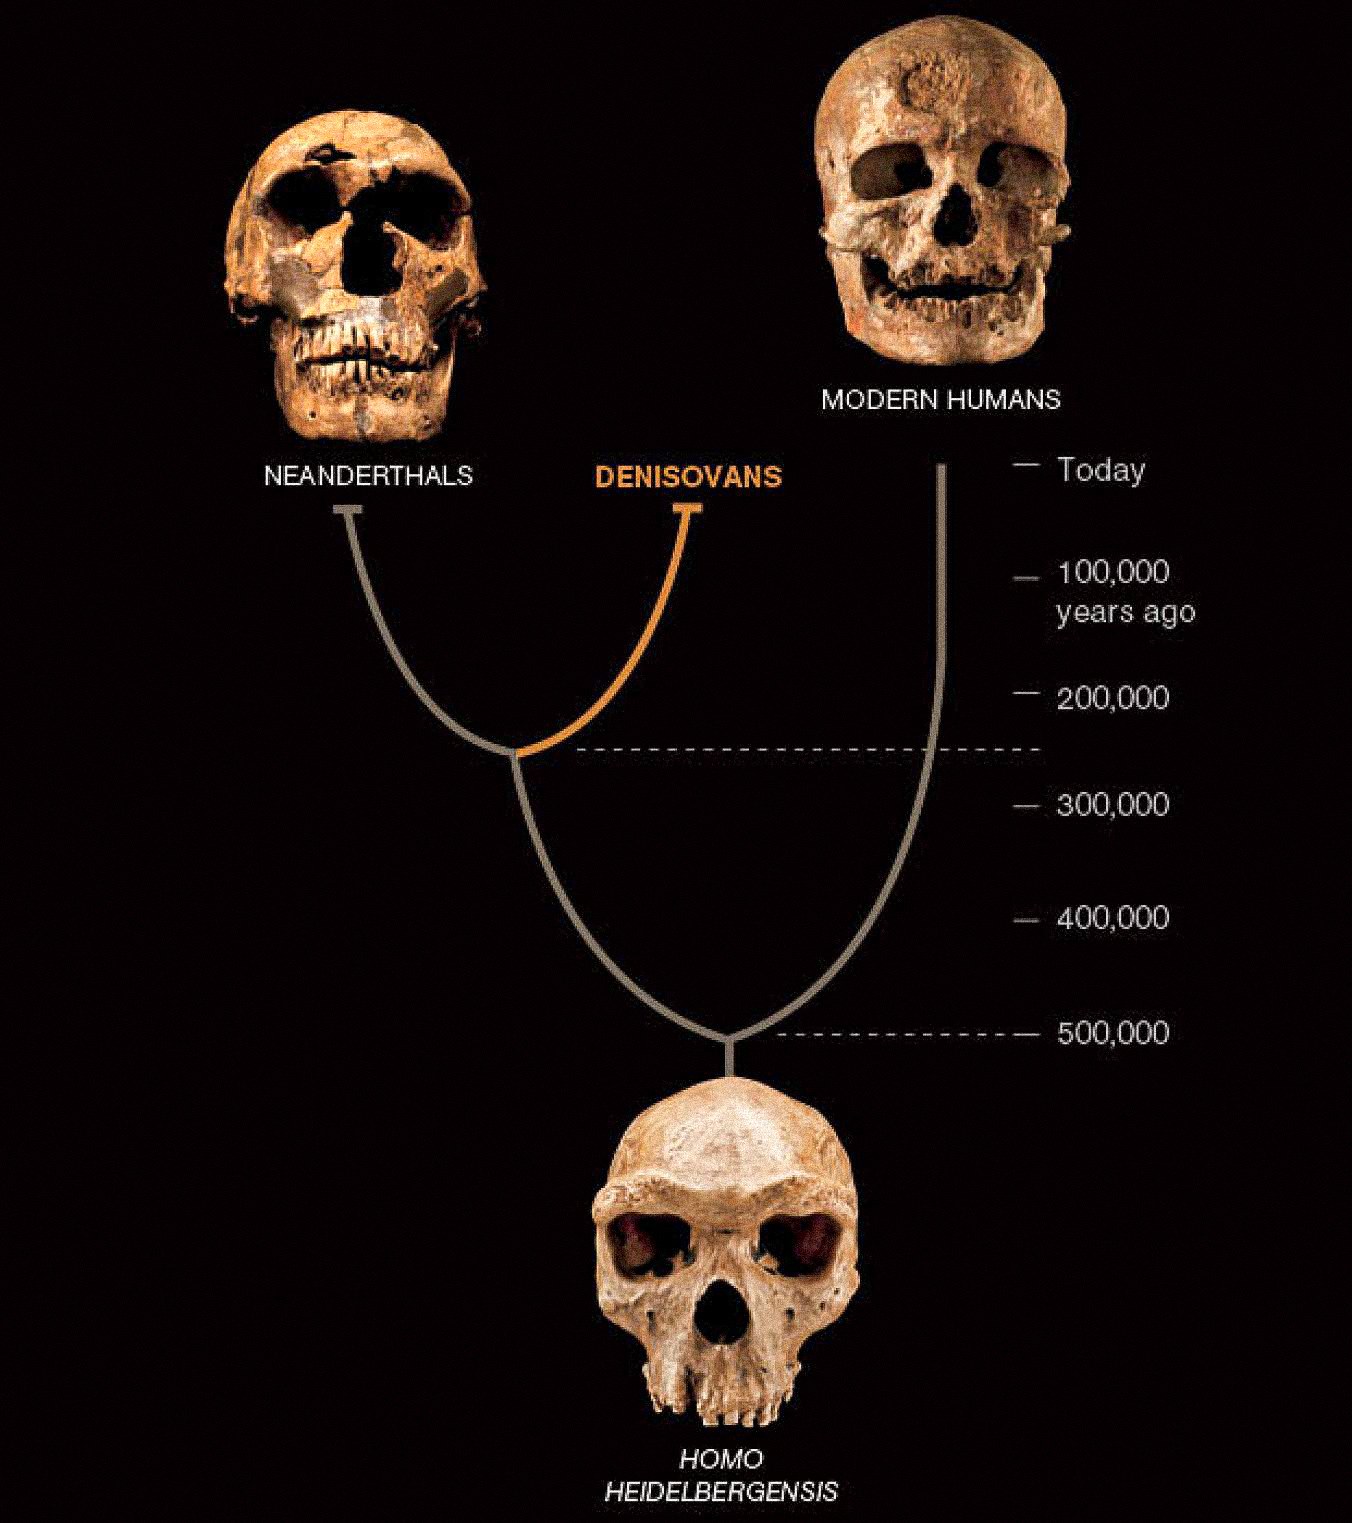 Una tercera especie de hombre, llamada denisovanos, parece haber coexistido con los neandertales y los primeros humanos modernos en Asia.  Los dos últimos son conocidos por sus abundantes fósiles y artefactos.  Hasta ahora, los denisovanos se definen solo por el ADN de una astilla de hueso y dos dientes, pero revela un nuevo giro en la historia humana.